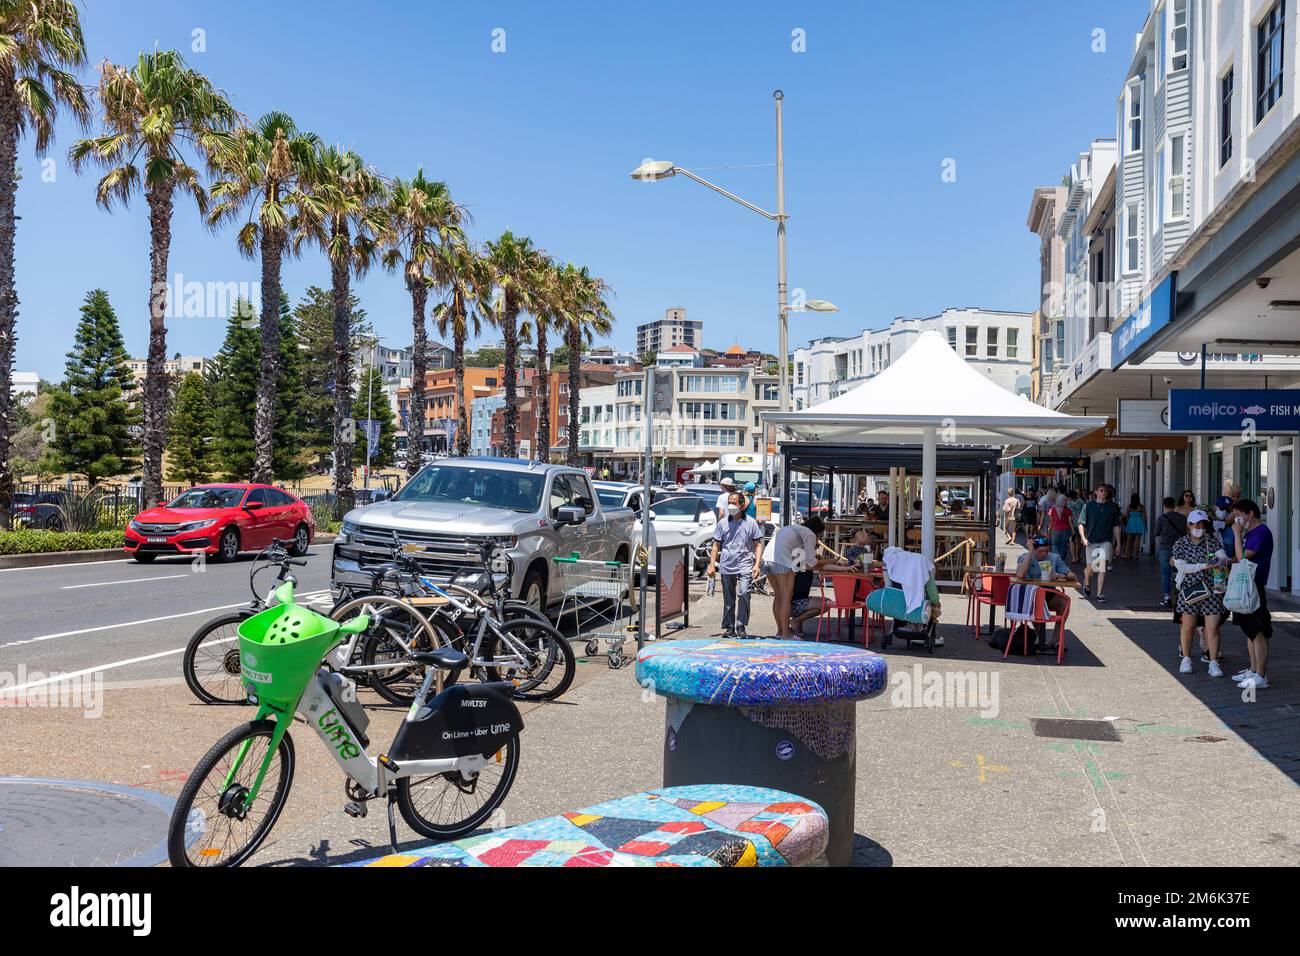 Bondi Beach Street Scene, vue le long de campbell parade avec des cafés et des restaurants, les gens de manger, Bondi, Sydney, NSW, Australie Banque D'Images